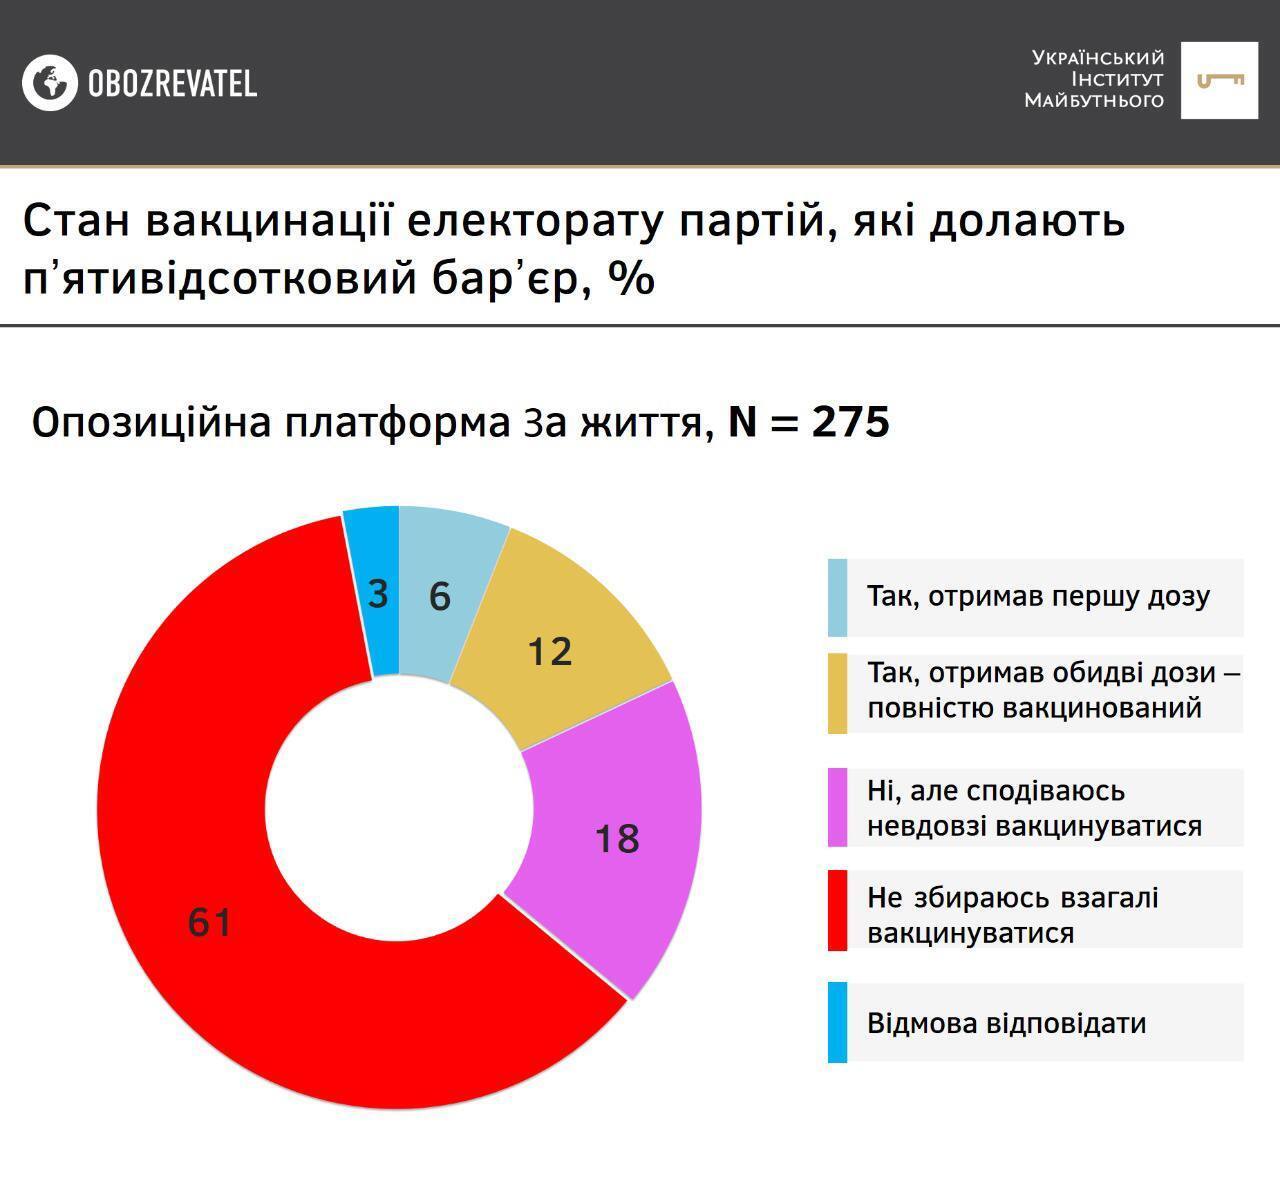 Результати опитування серед прихильників партії "ОПЗЖ"